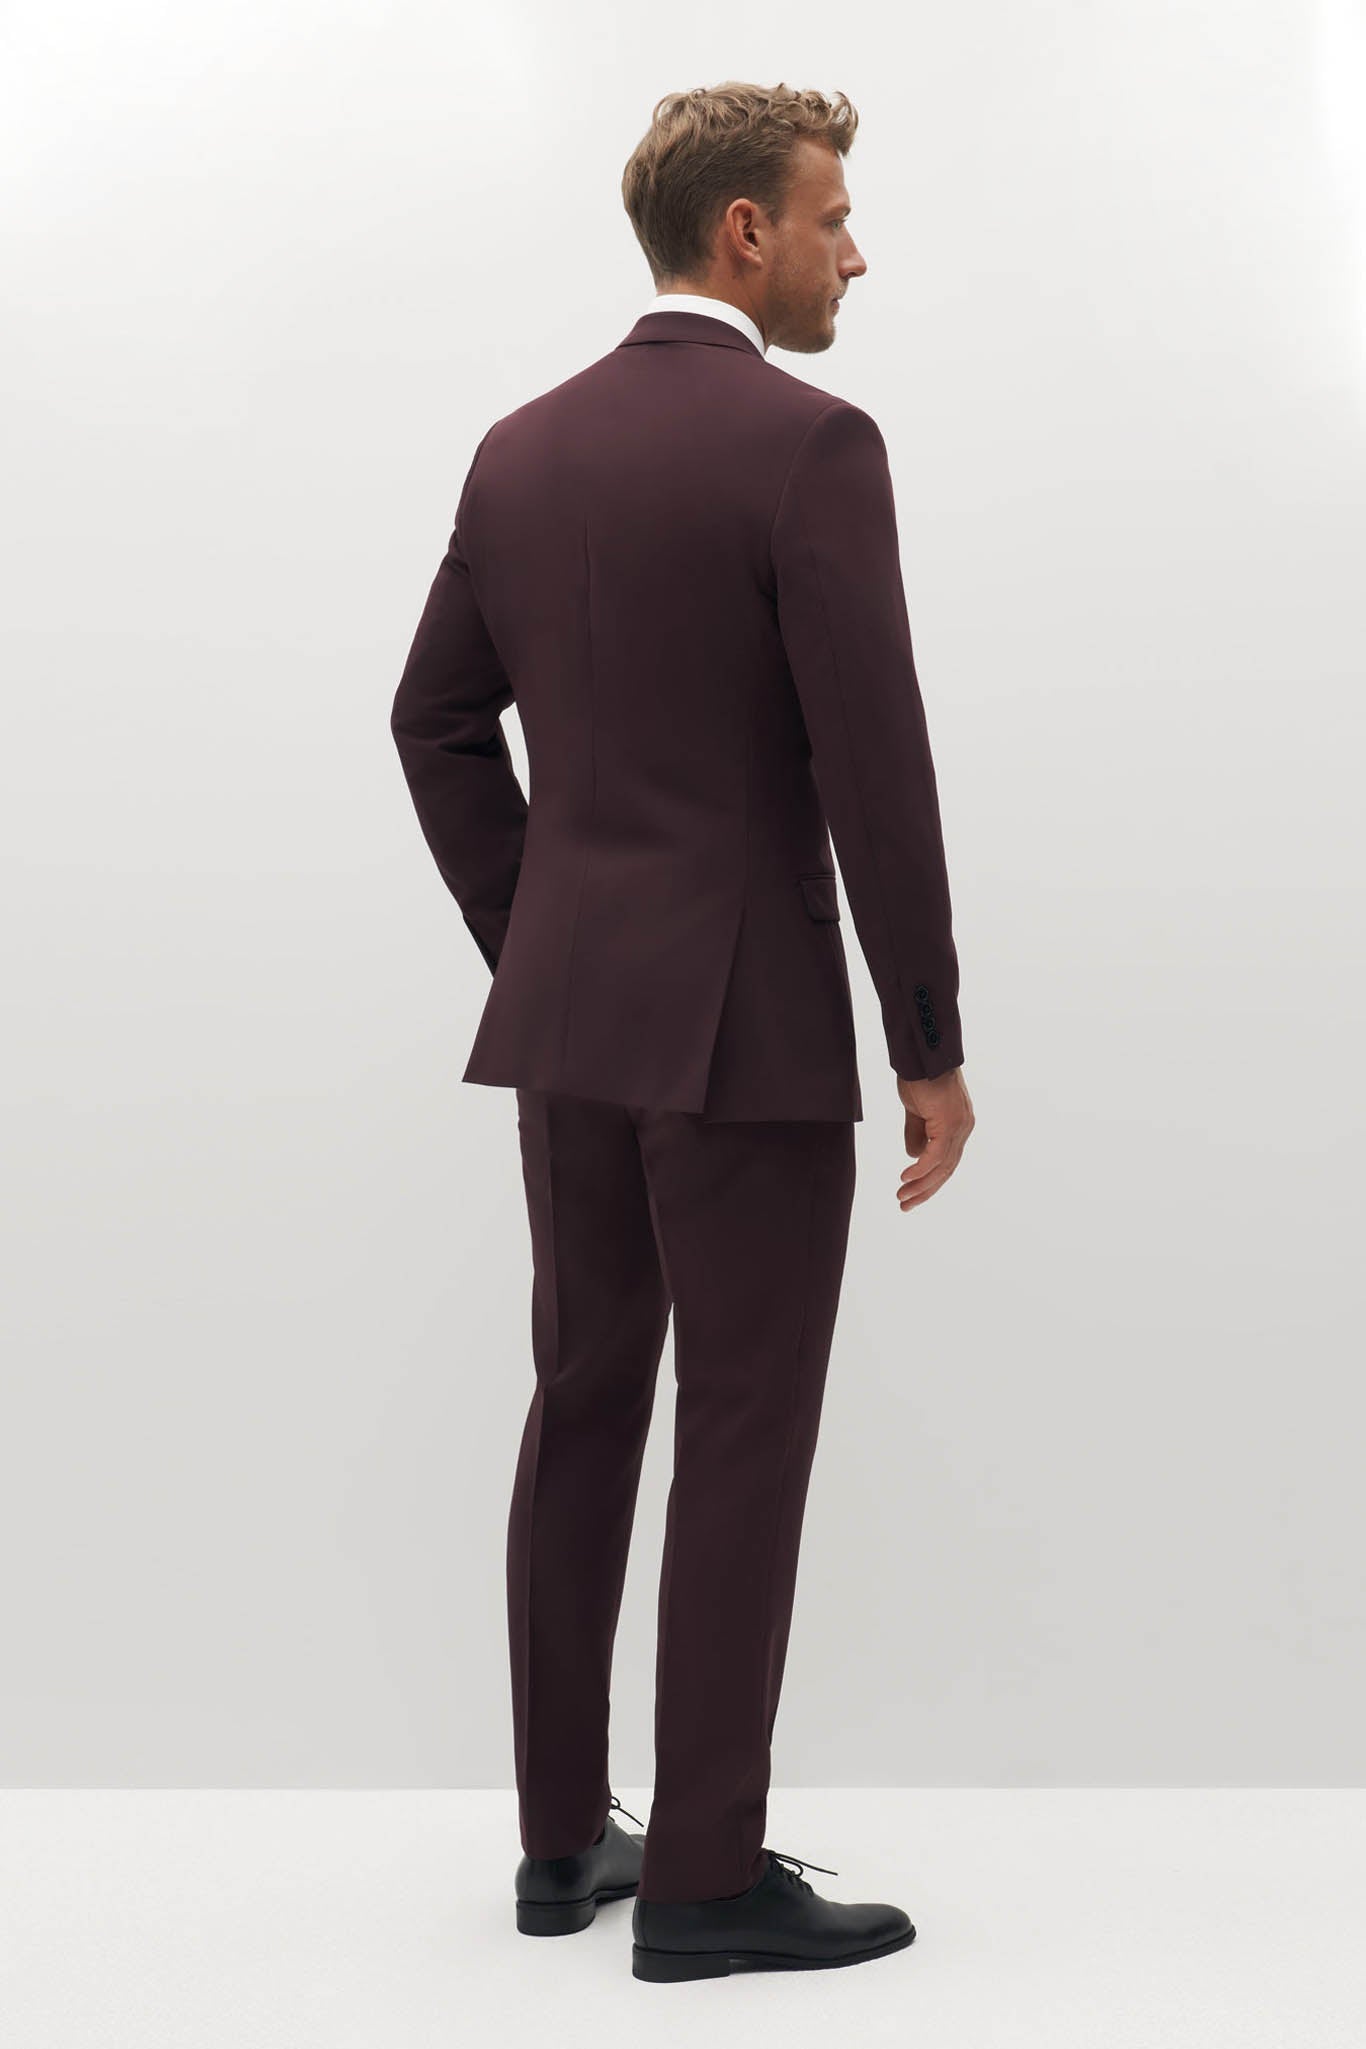 Slim Fit Burgundy Suit  Tumuh